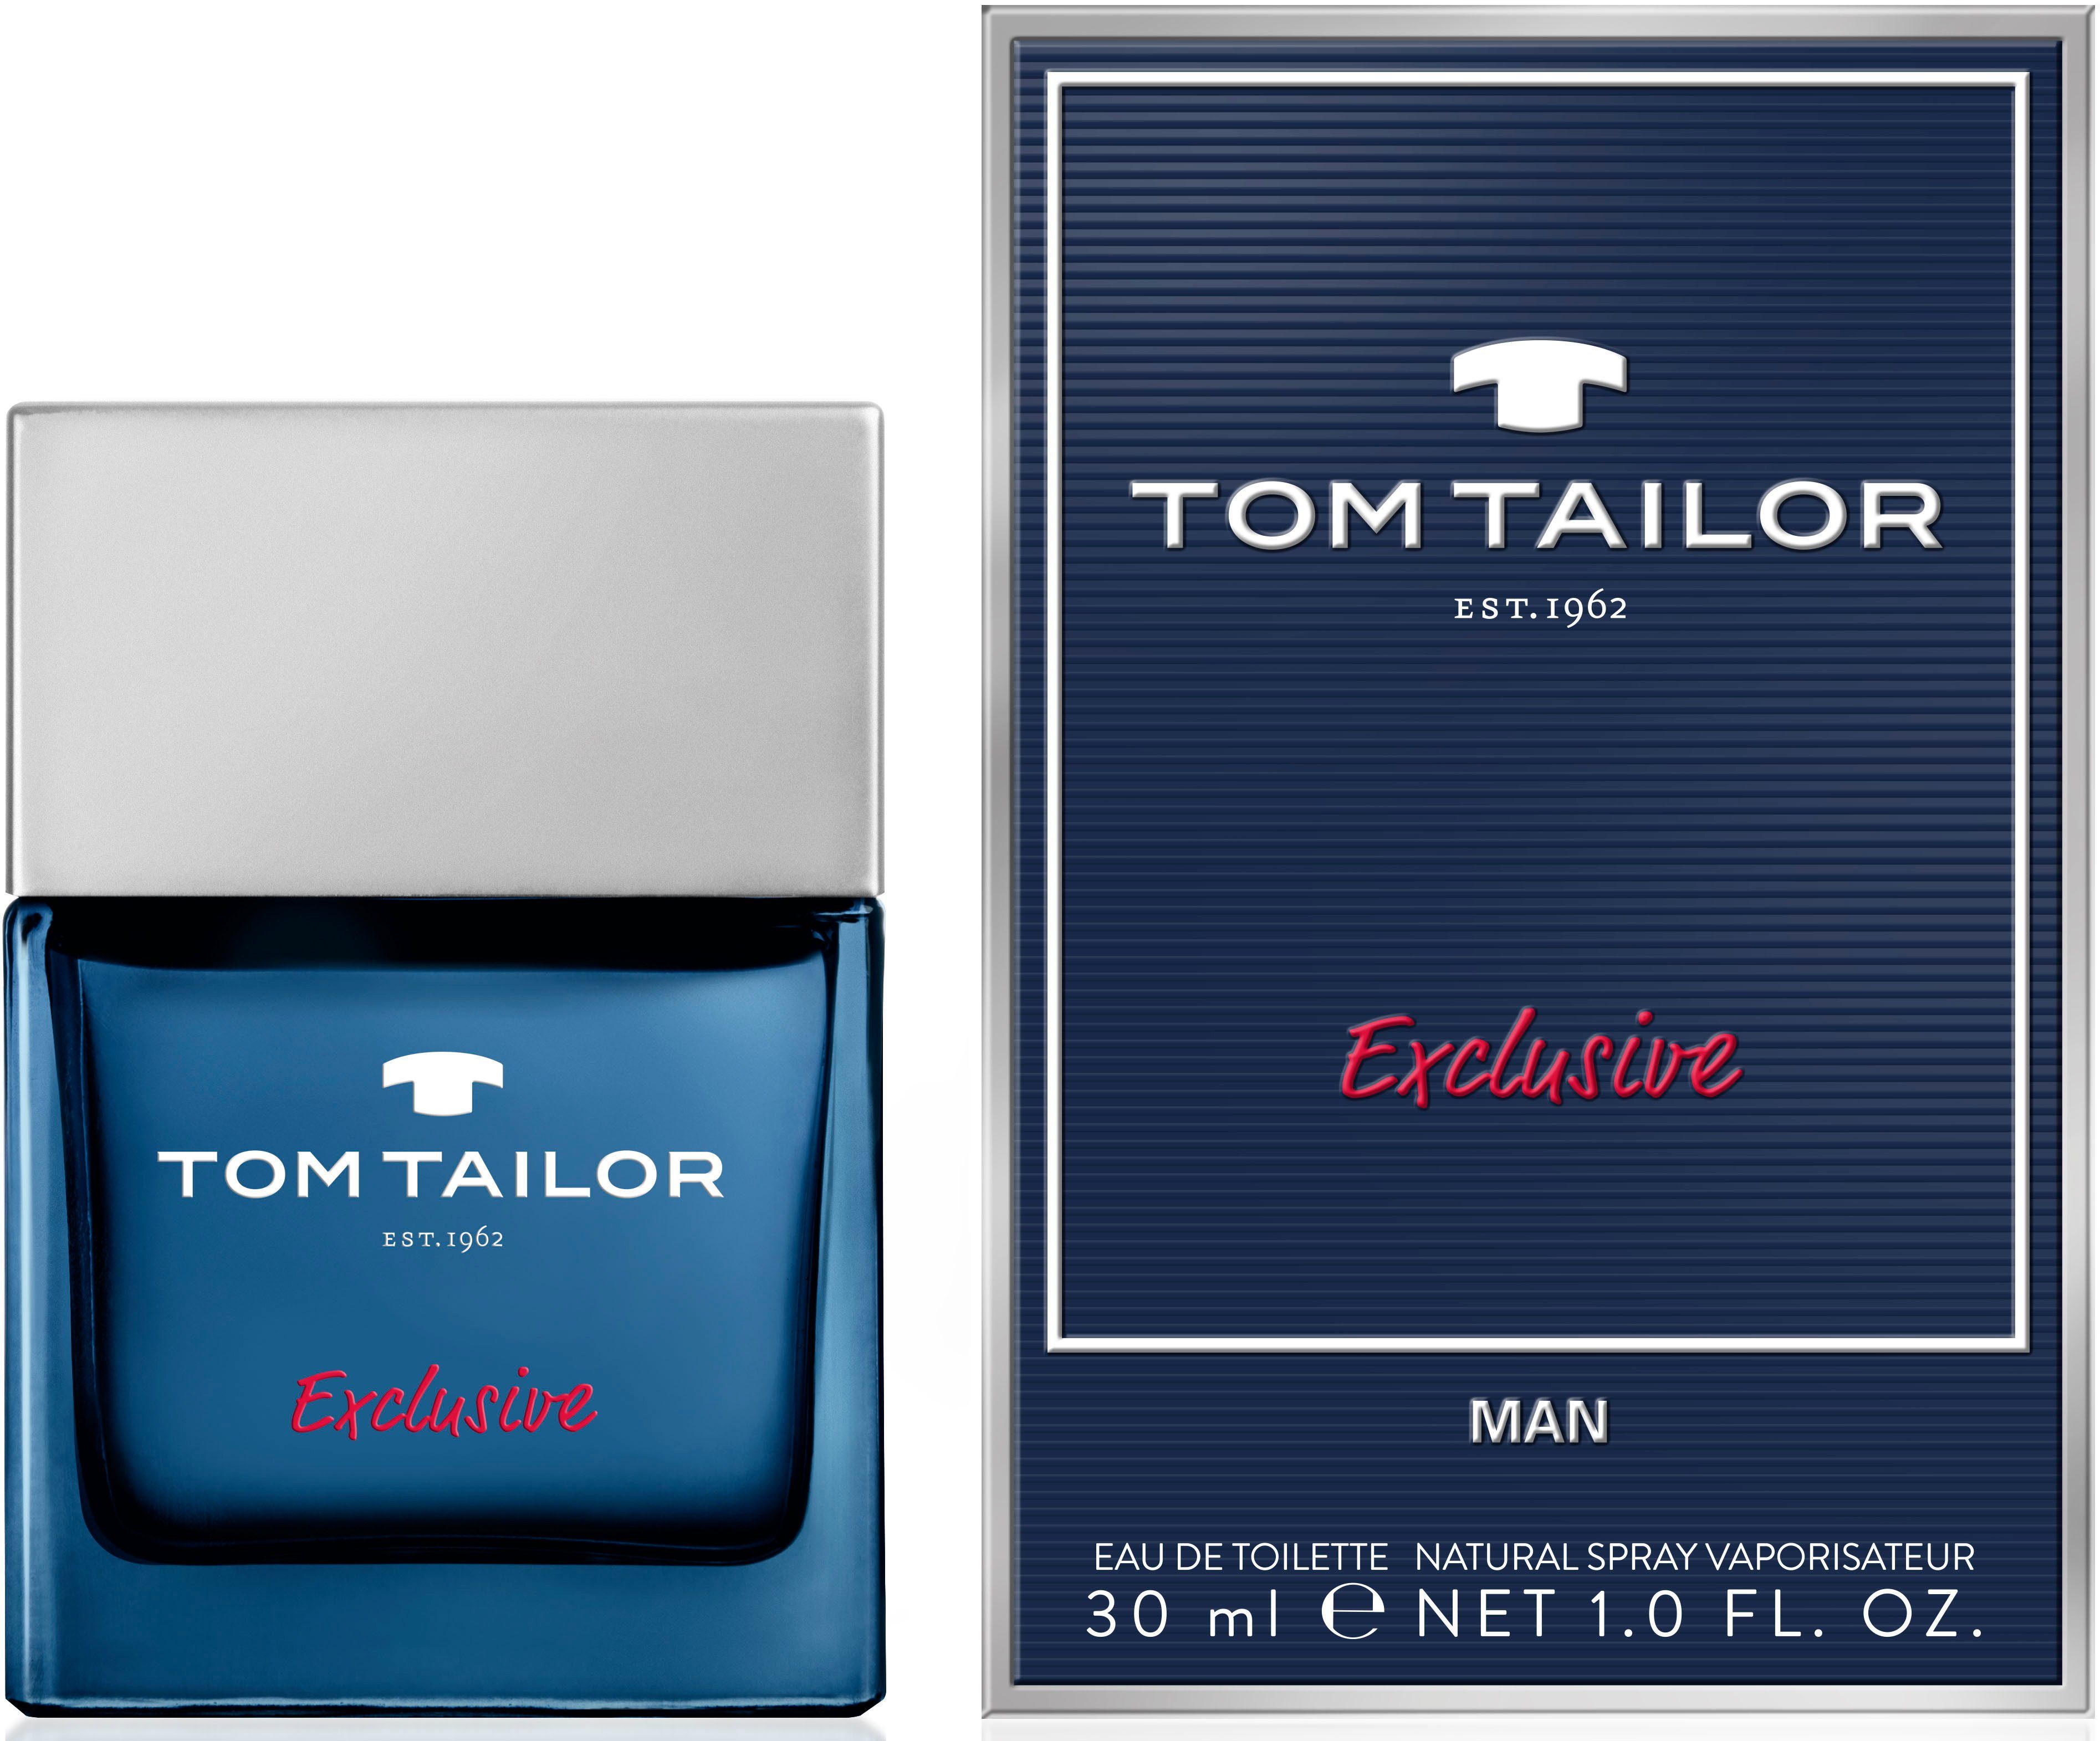 TOM TAILOR Man Tailor Toilette de Eau Exclusive Tom